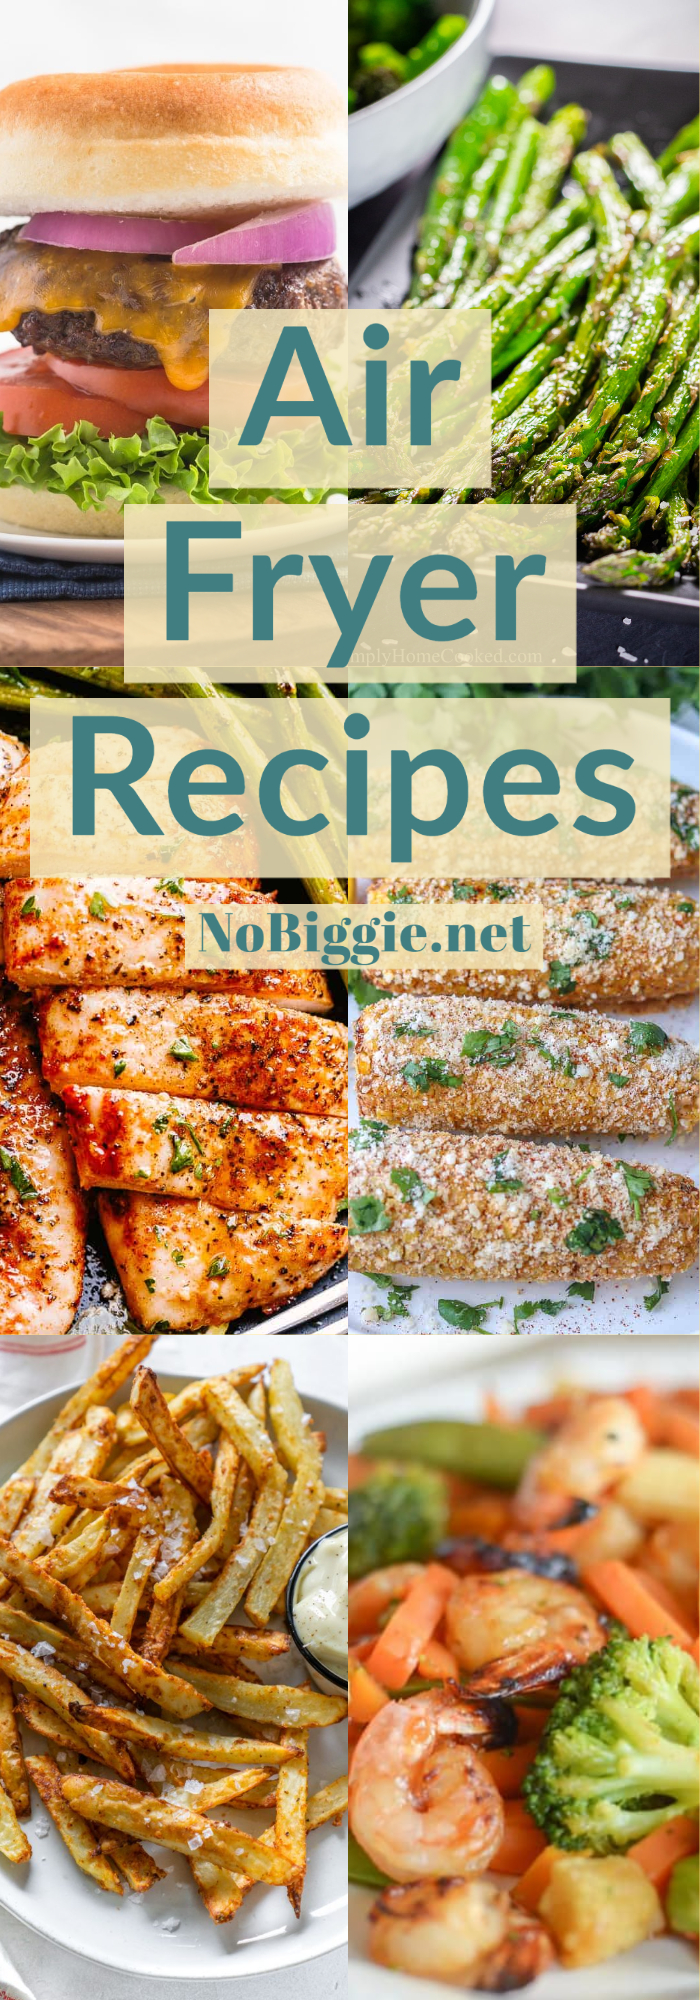 Air Fryer Recipes | NoBiggie.net